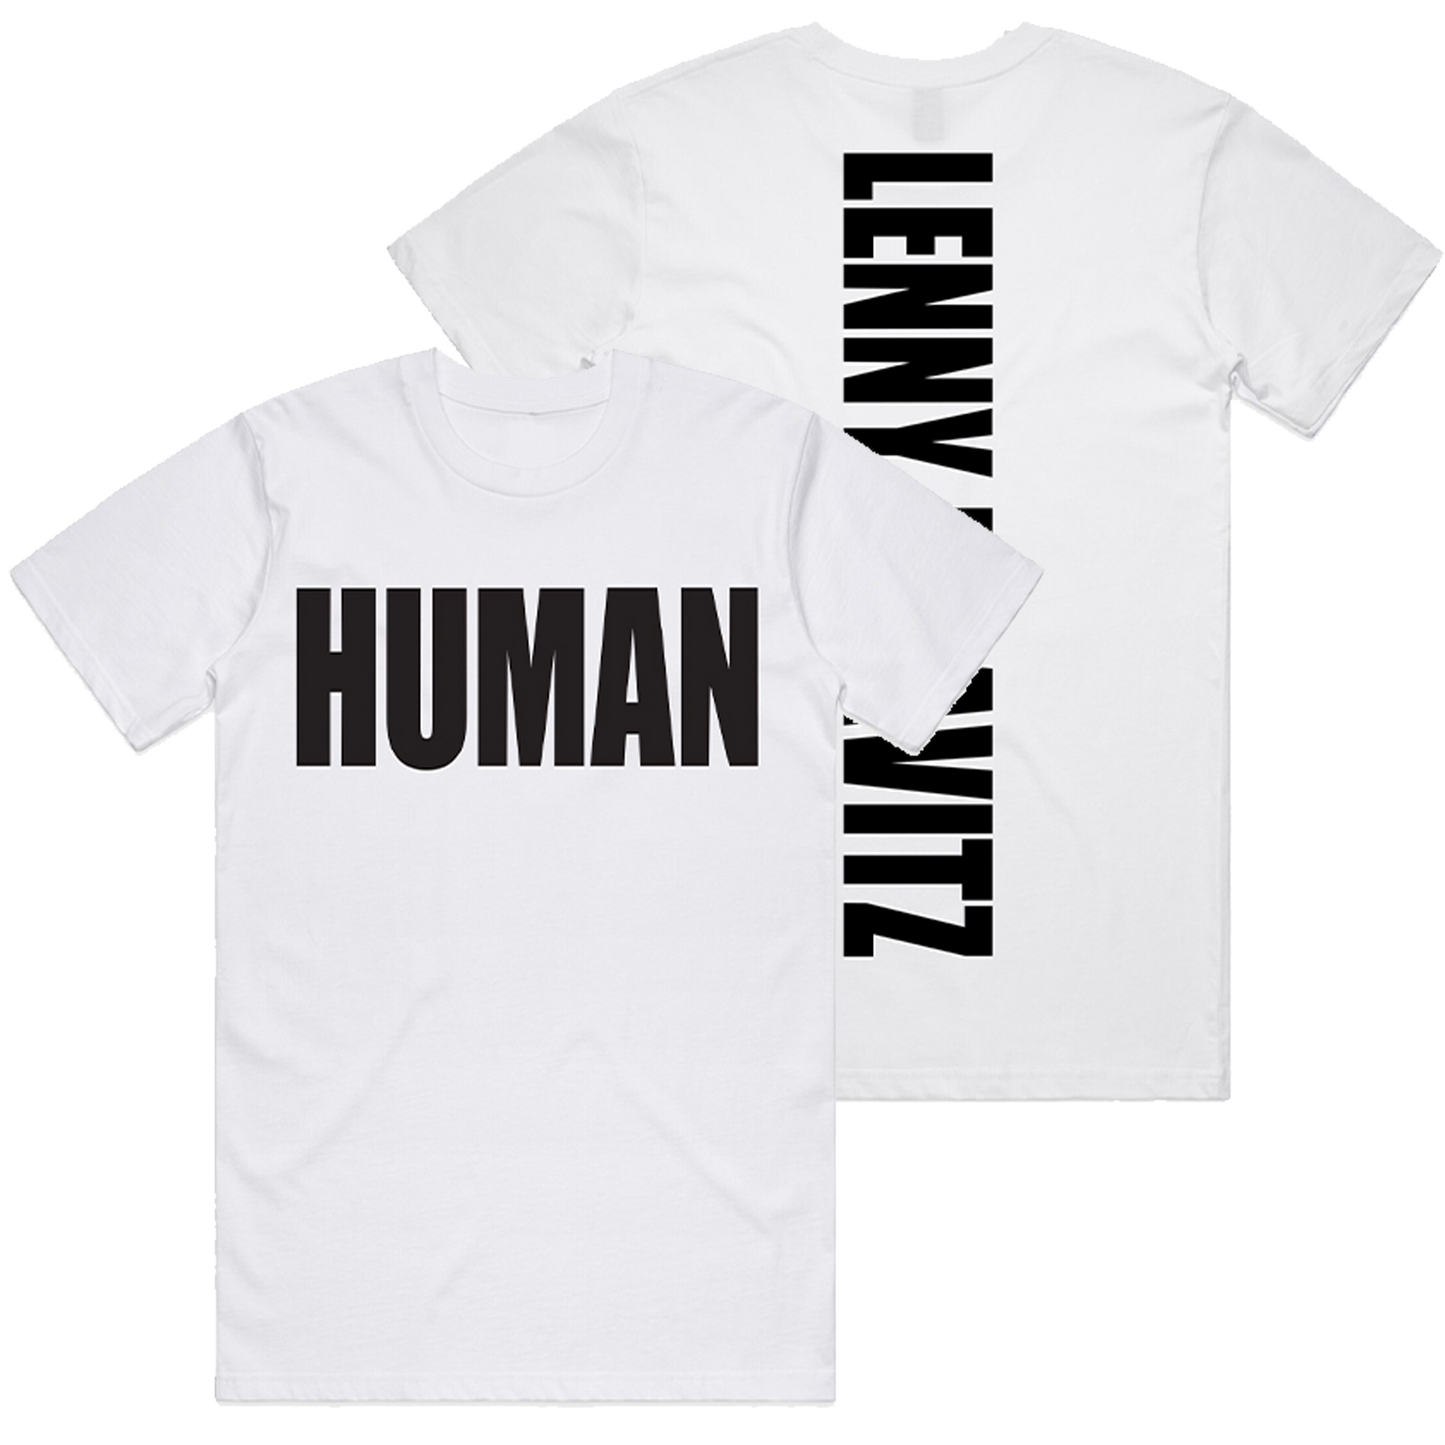 Human Tee - White